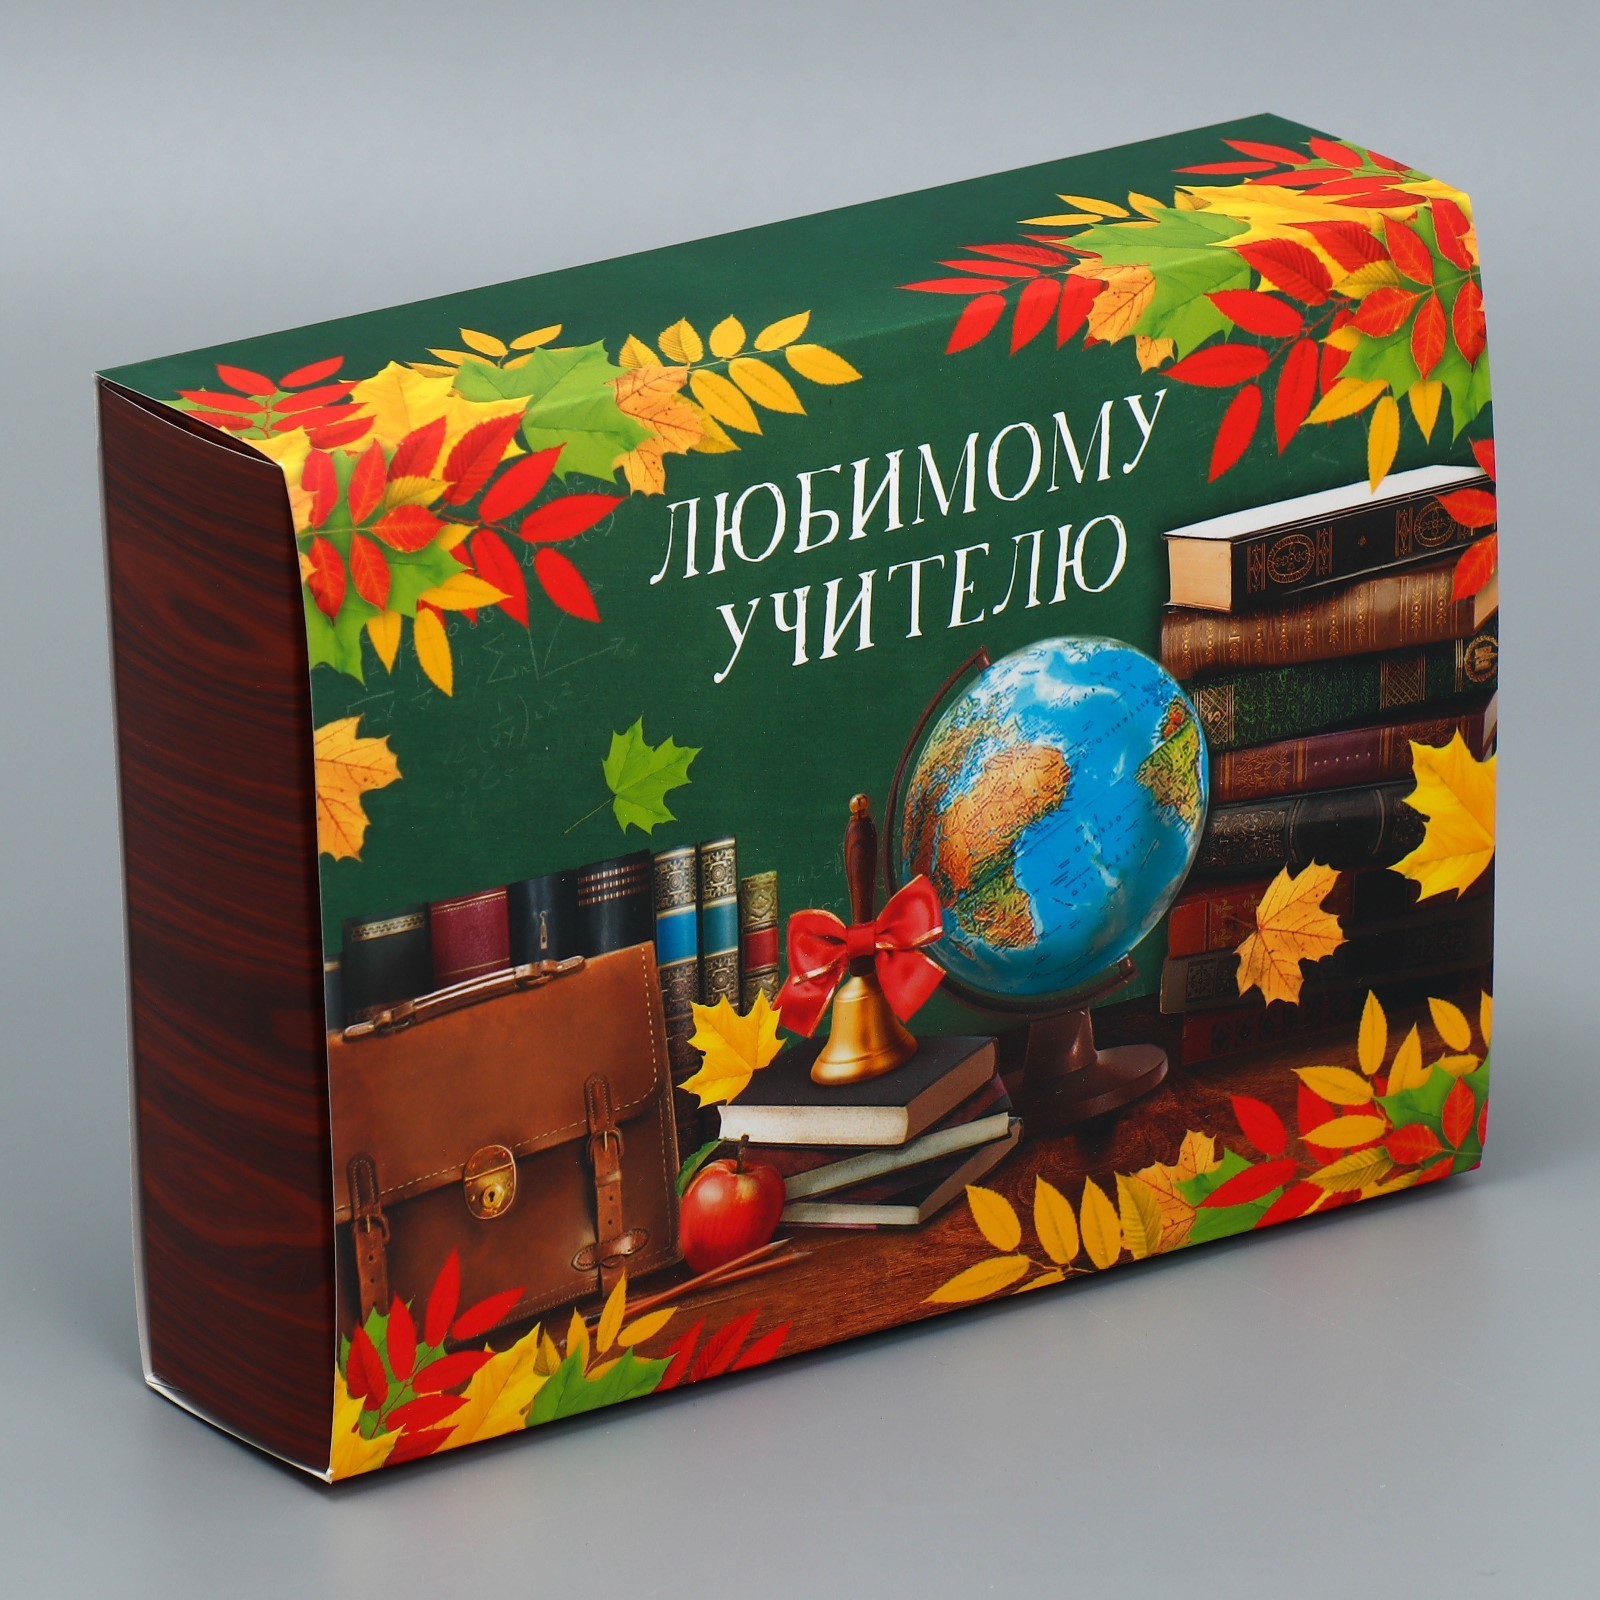 Коробка для сладостей «Любимому учителю», 20 × 15 × 5 см.